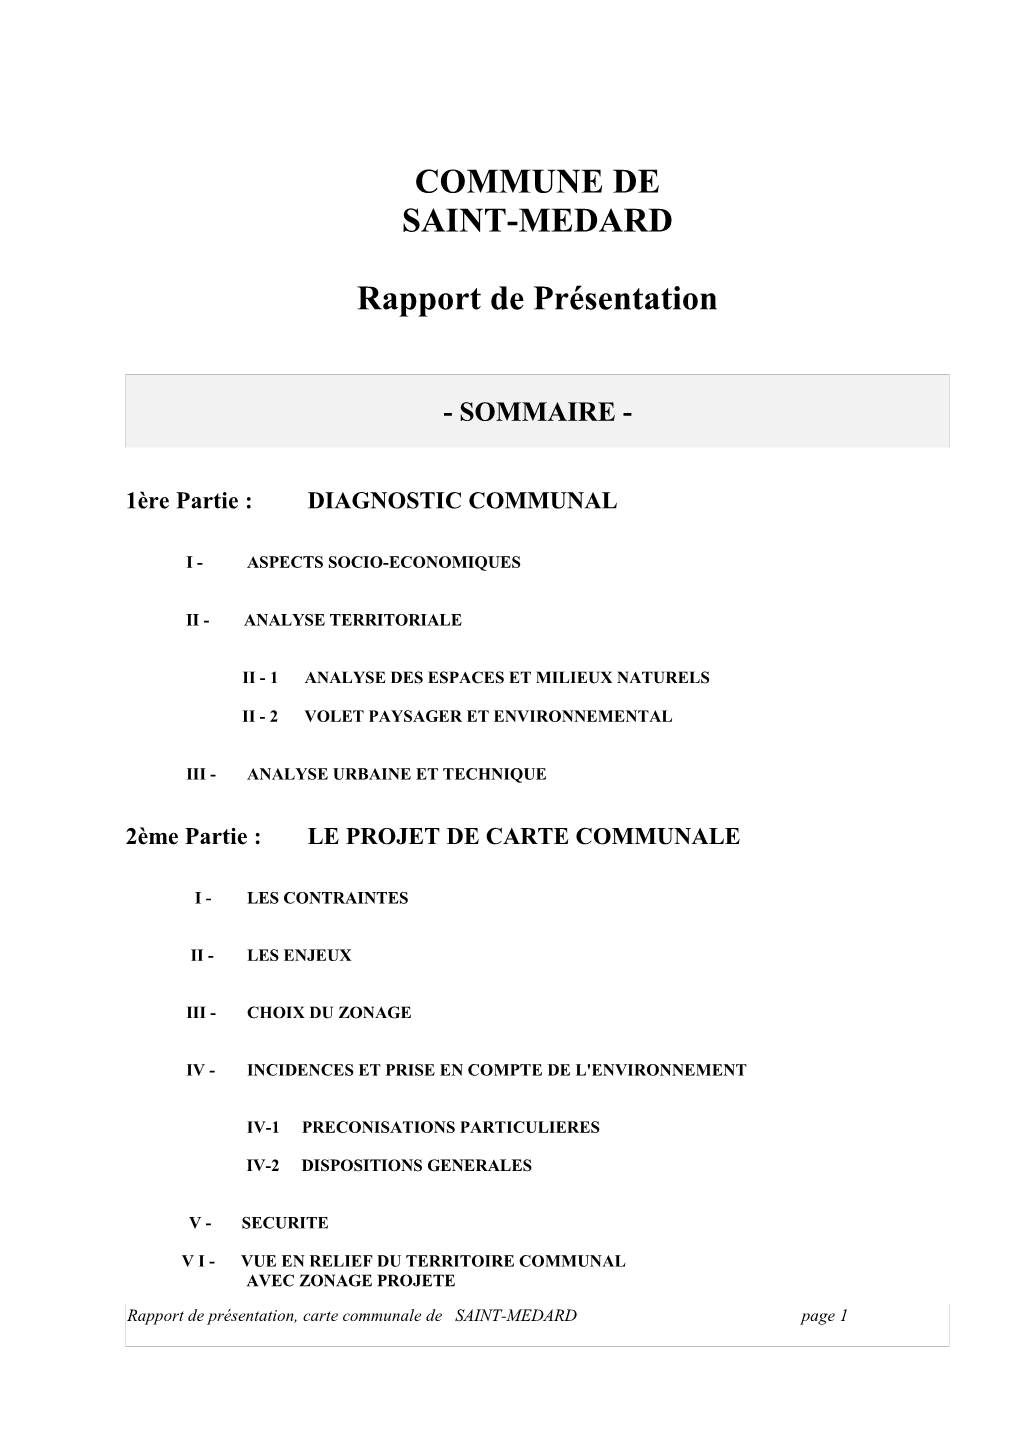 COMMUNE DE SAINT-MEDARD Rapport De Présentation